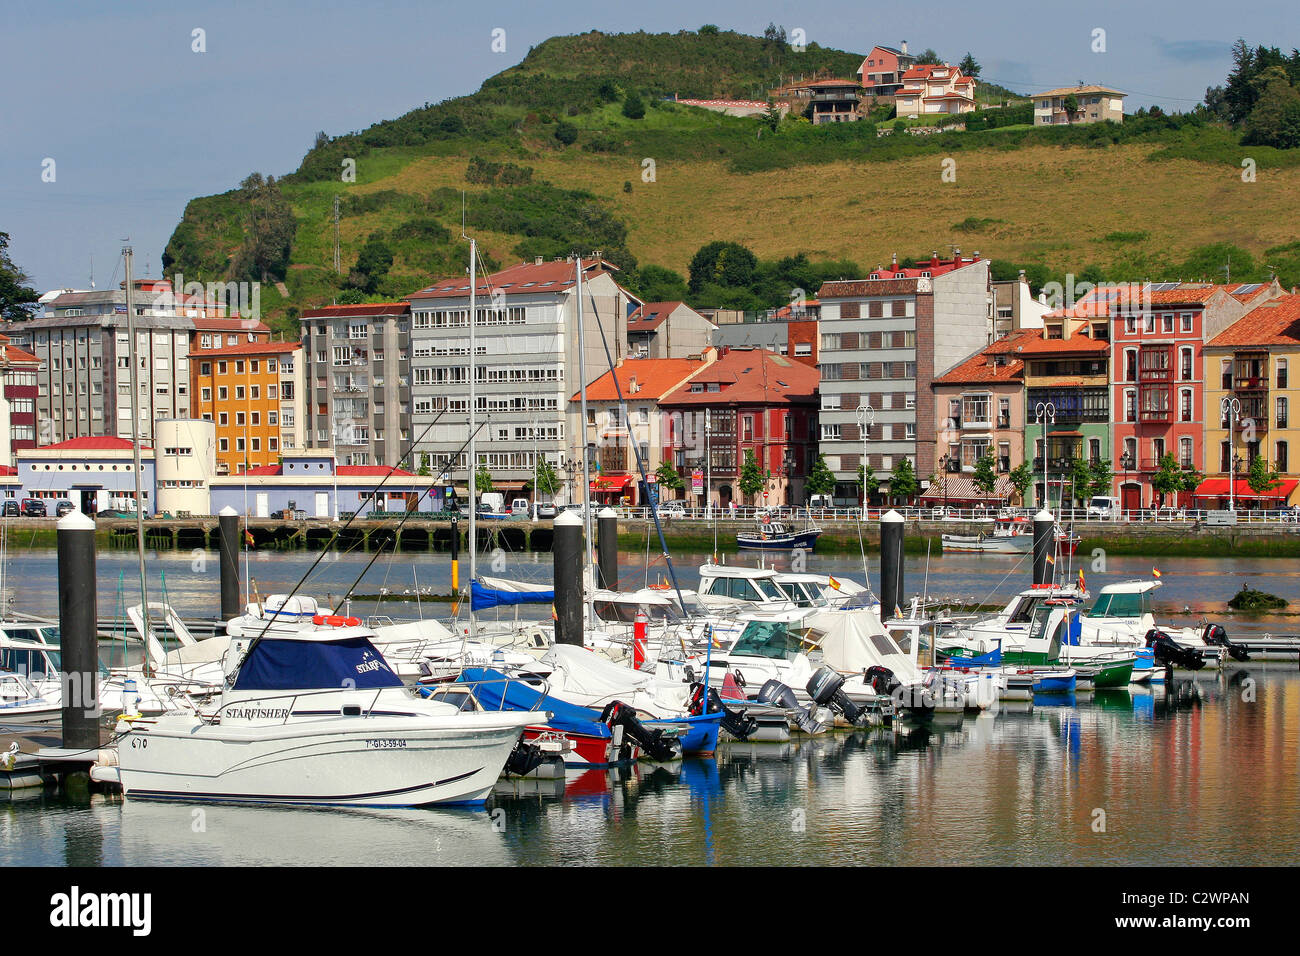 Port of Ribadesella, Asturias. Stock Photo